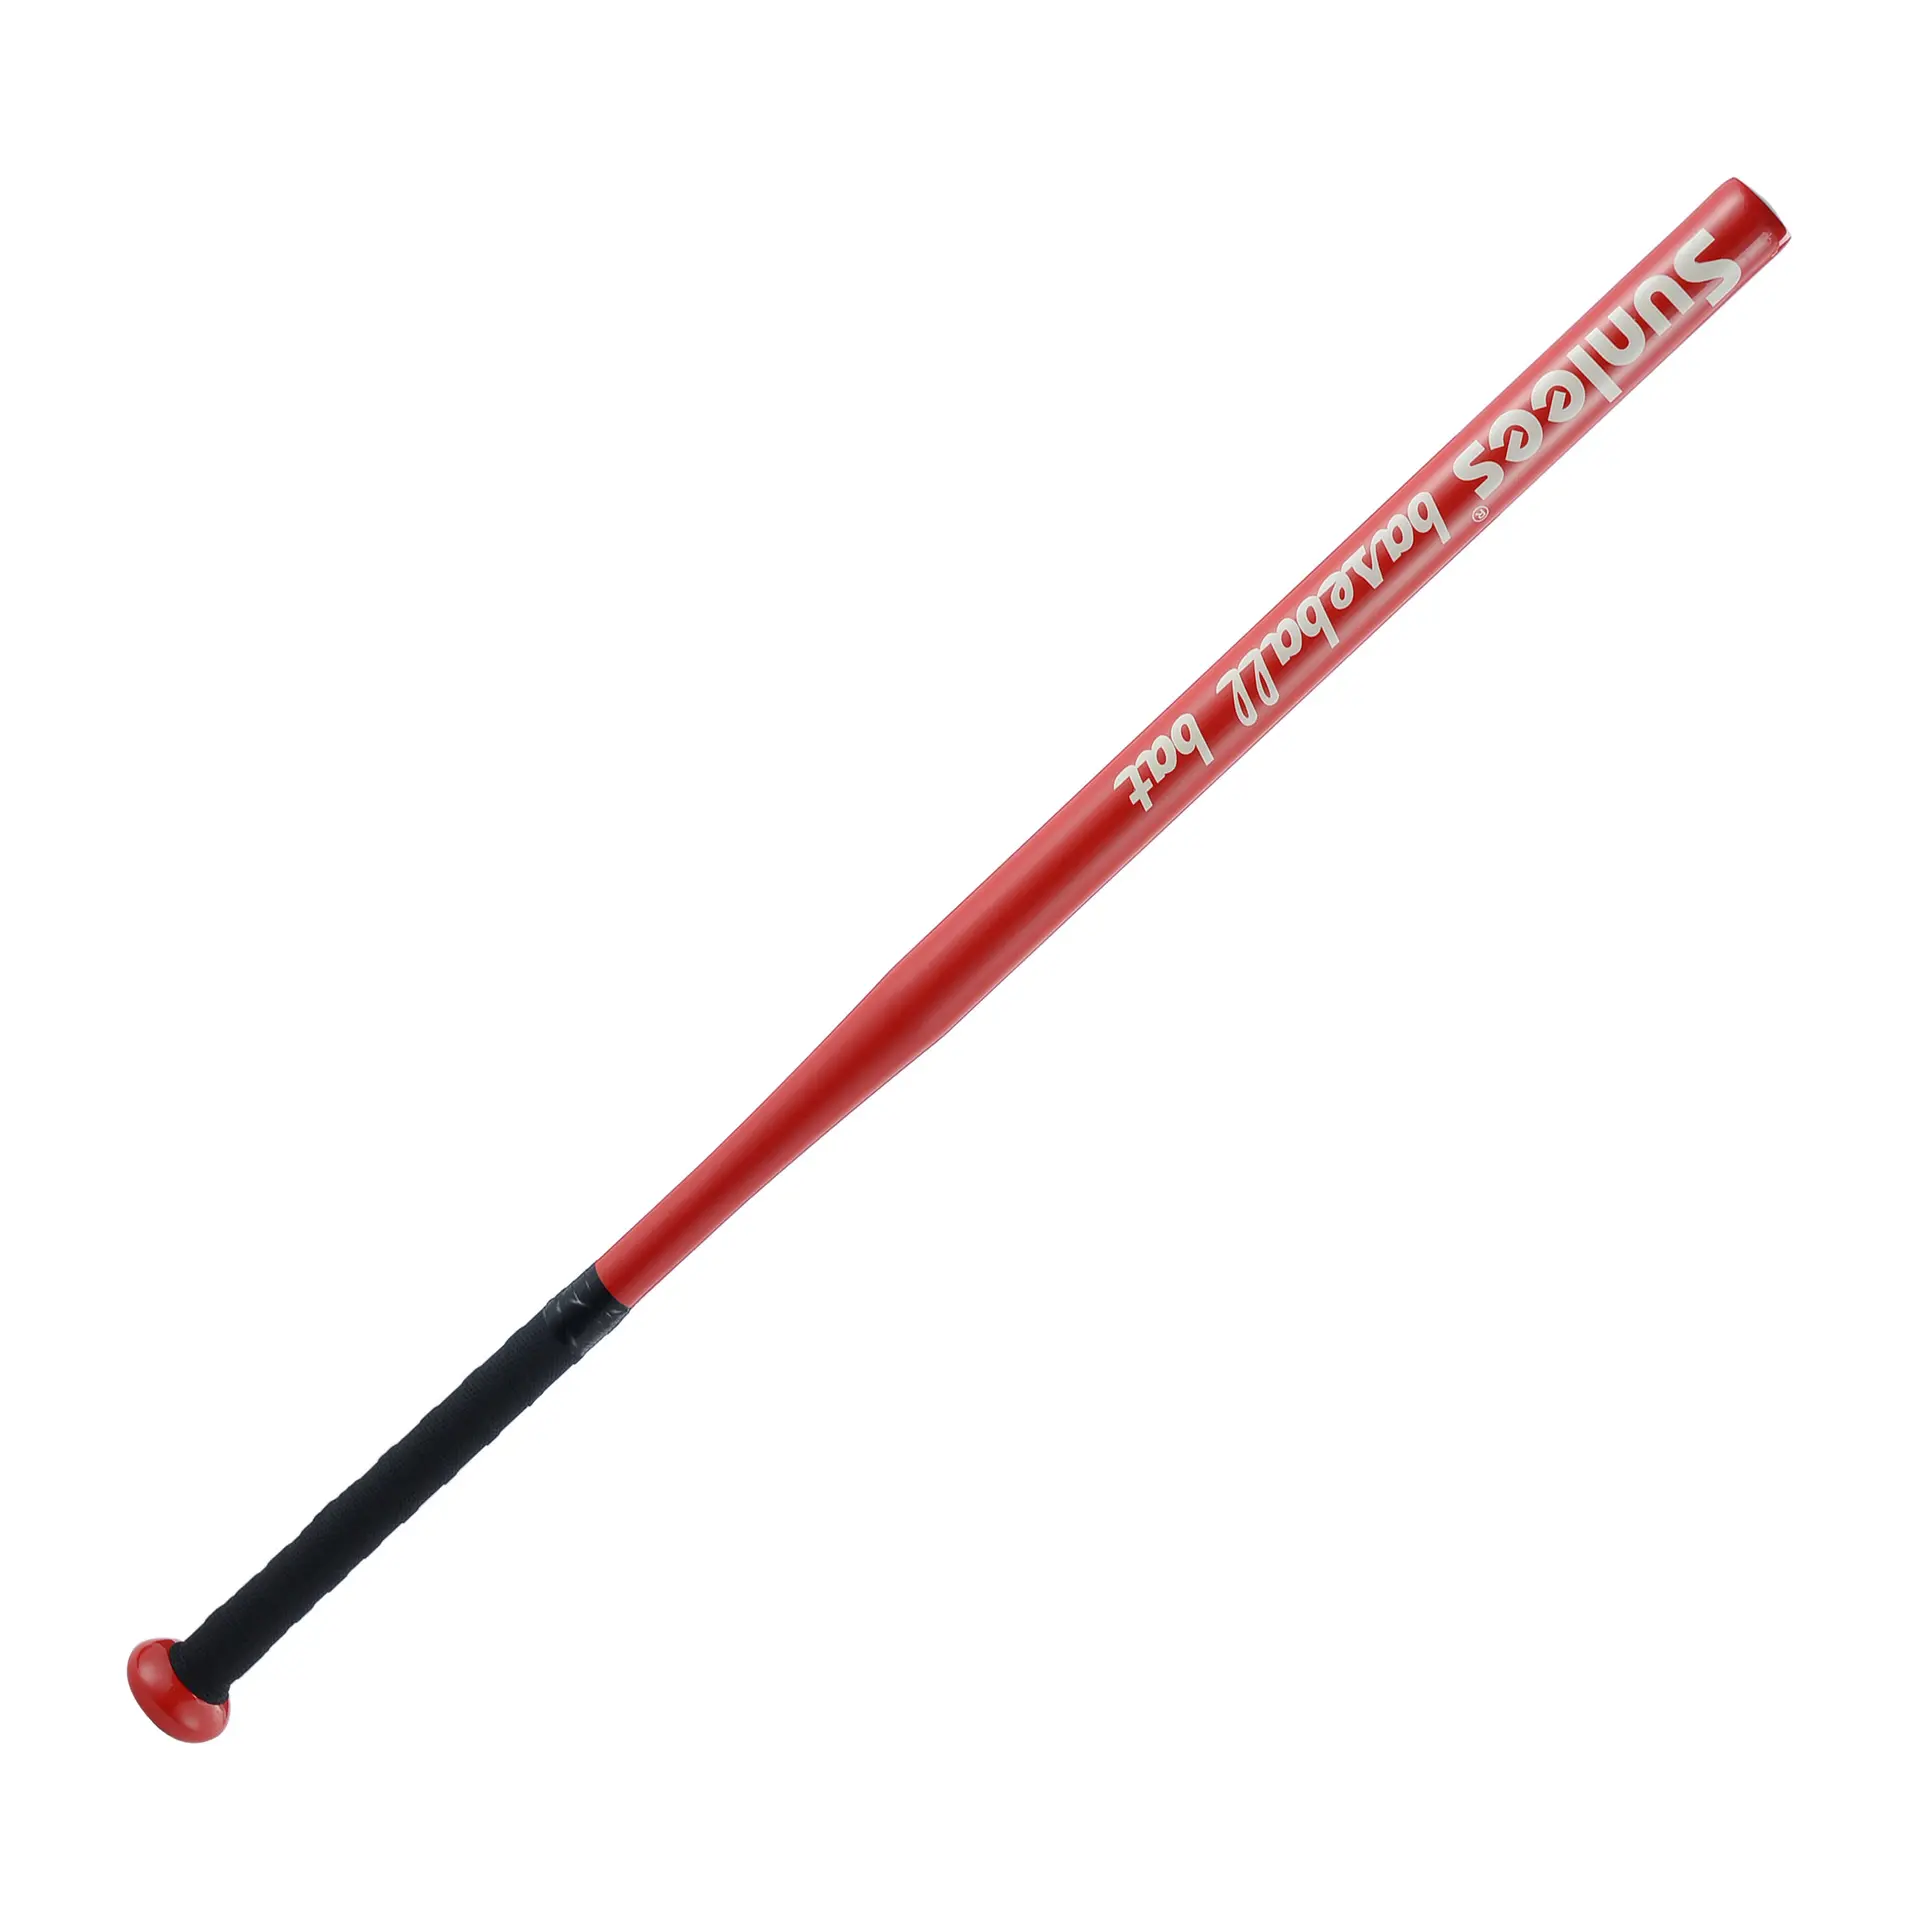 Hot sale Metal Softball Bar Baseball Bat For Home Defense Lightweight Aluminum outdoors Safty